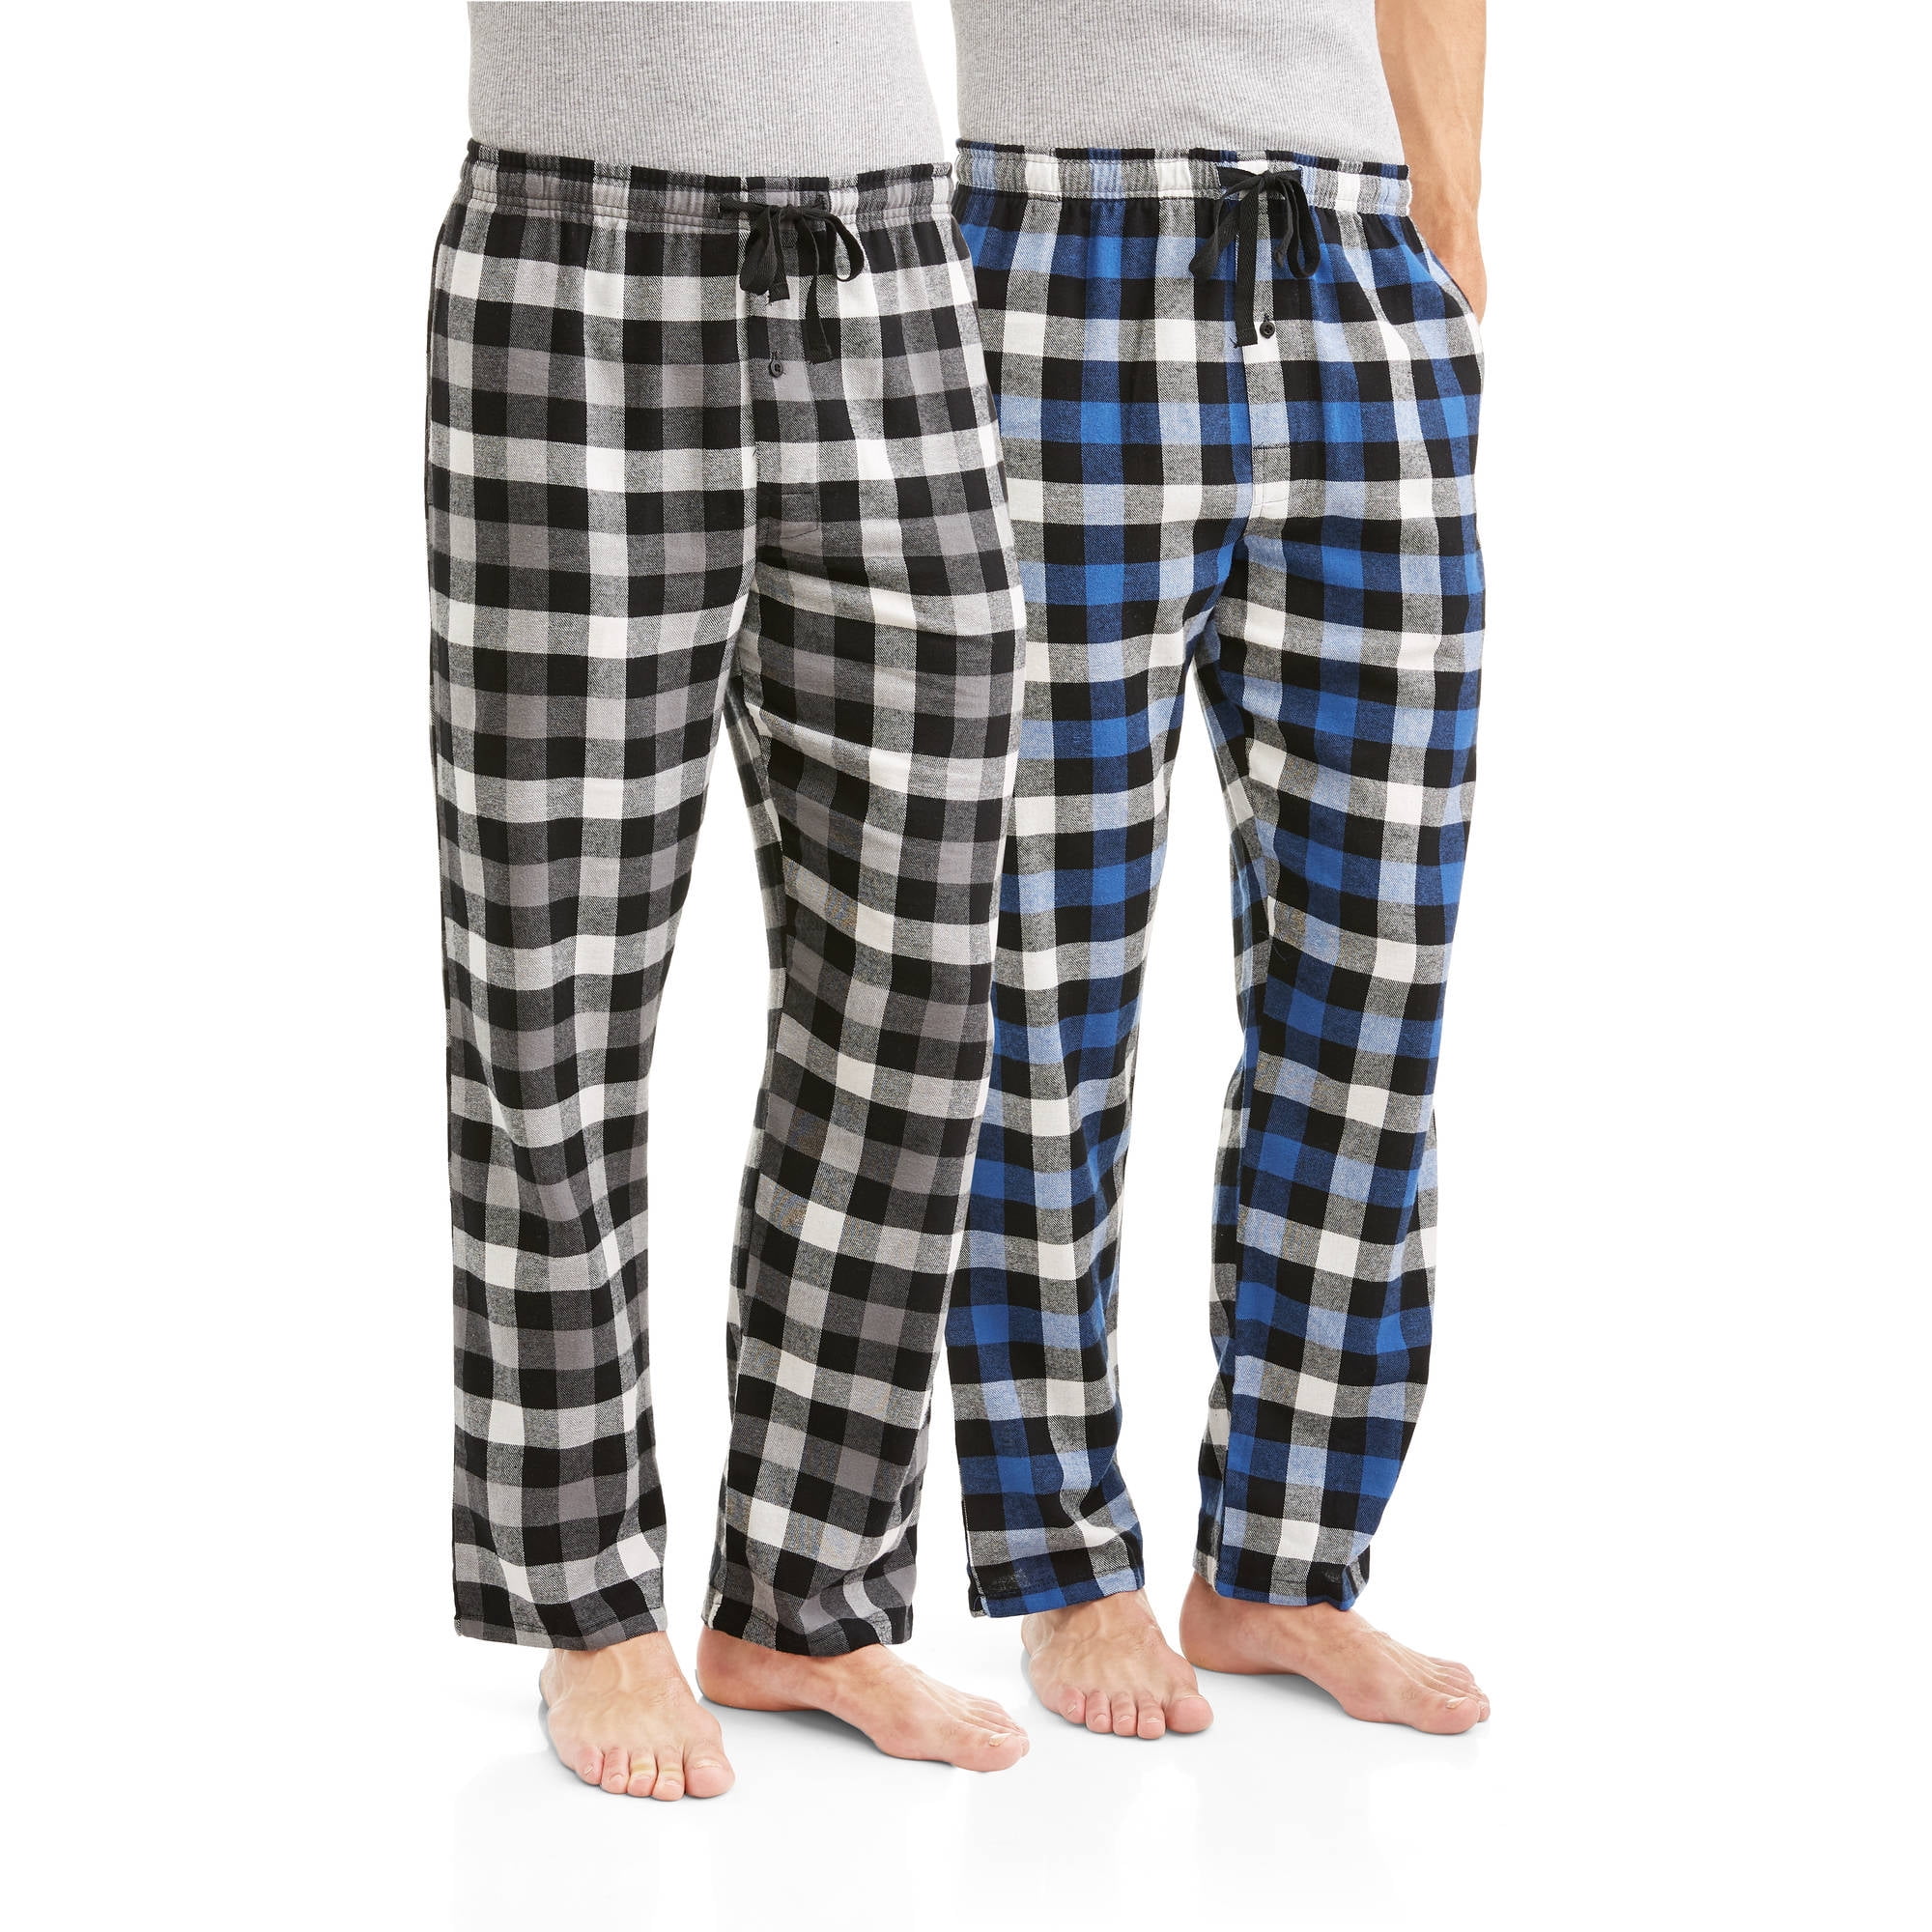 Hanes Men's 2-pack 100% Cotton Flannel Pajama Pant - Walmart.com